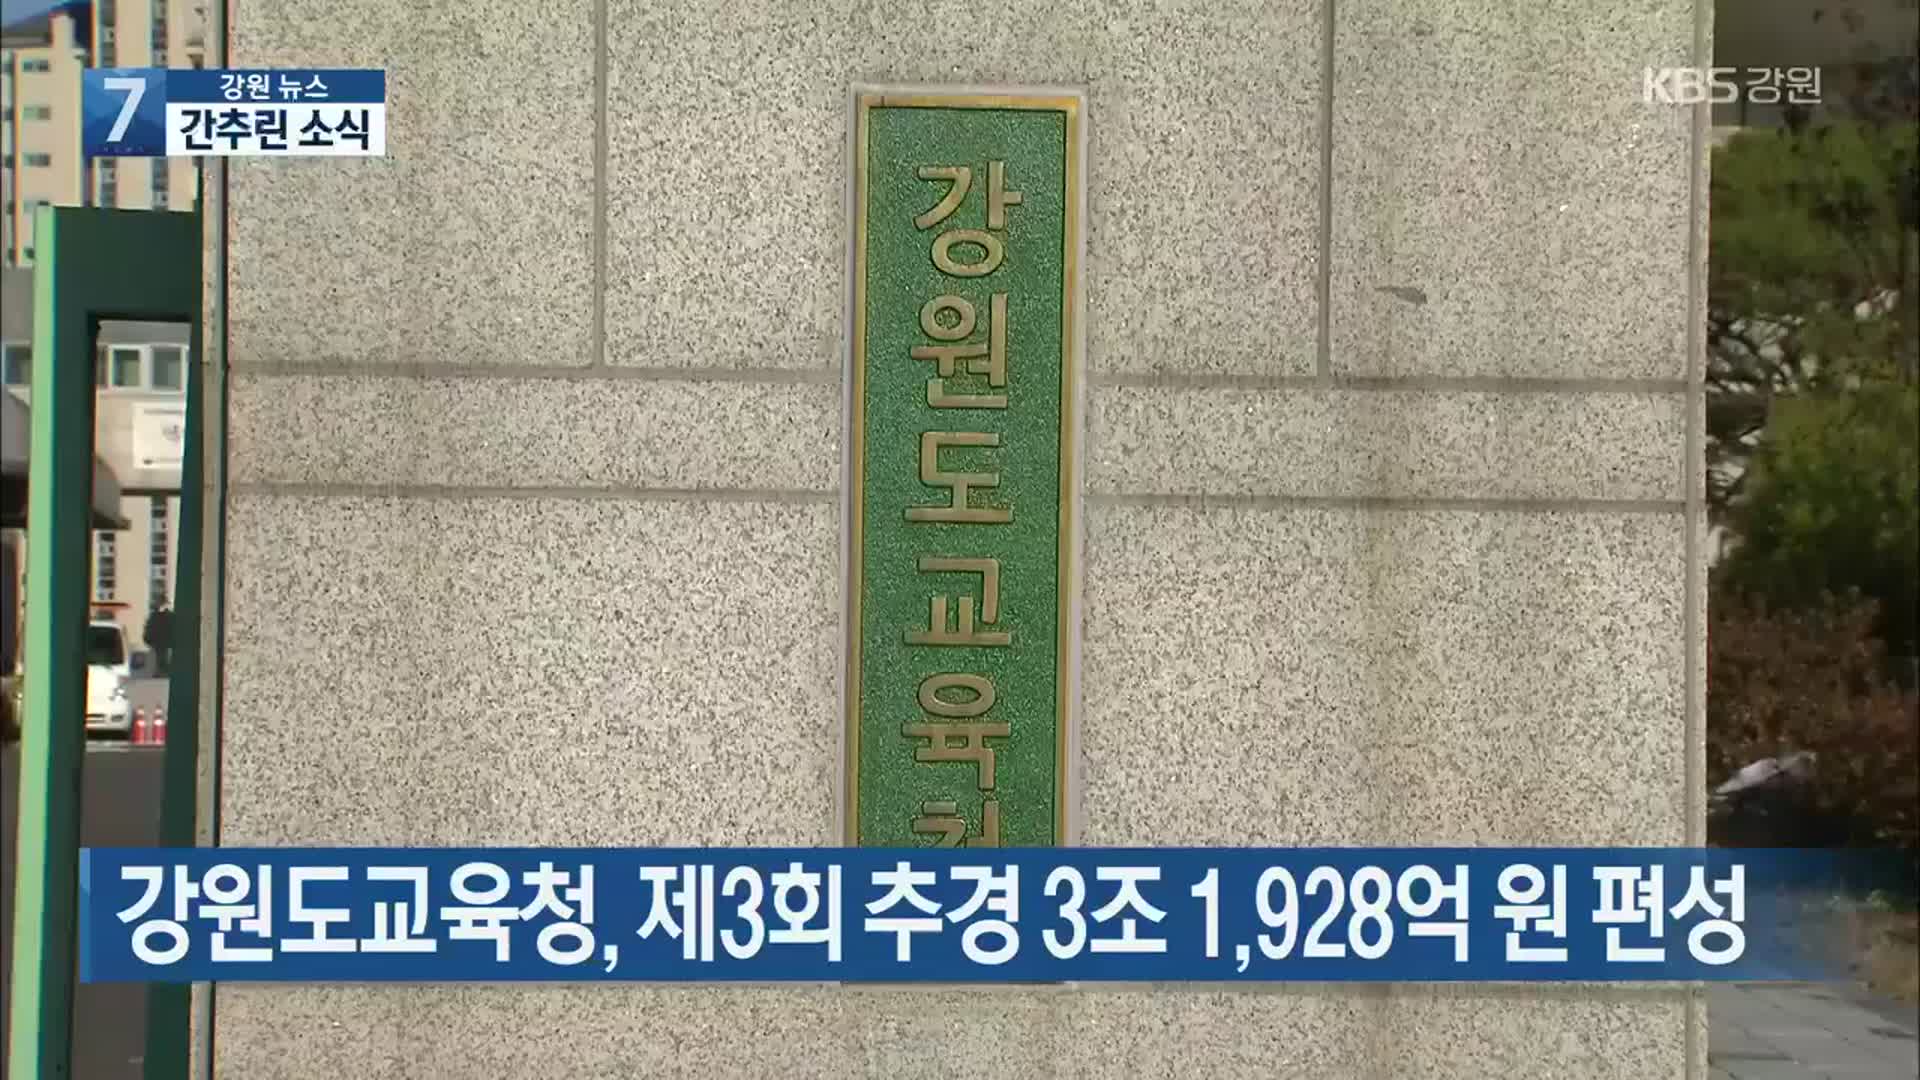 [간추린 소식] 강원도교육청, 제3회 추경 3조 1,928억 원 편성 외